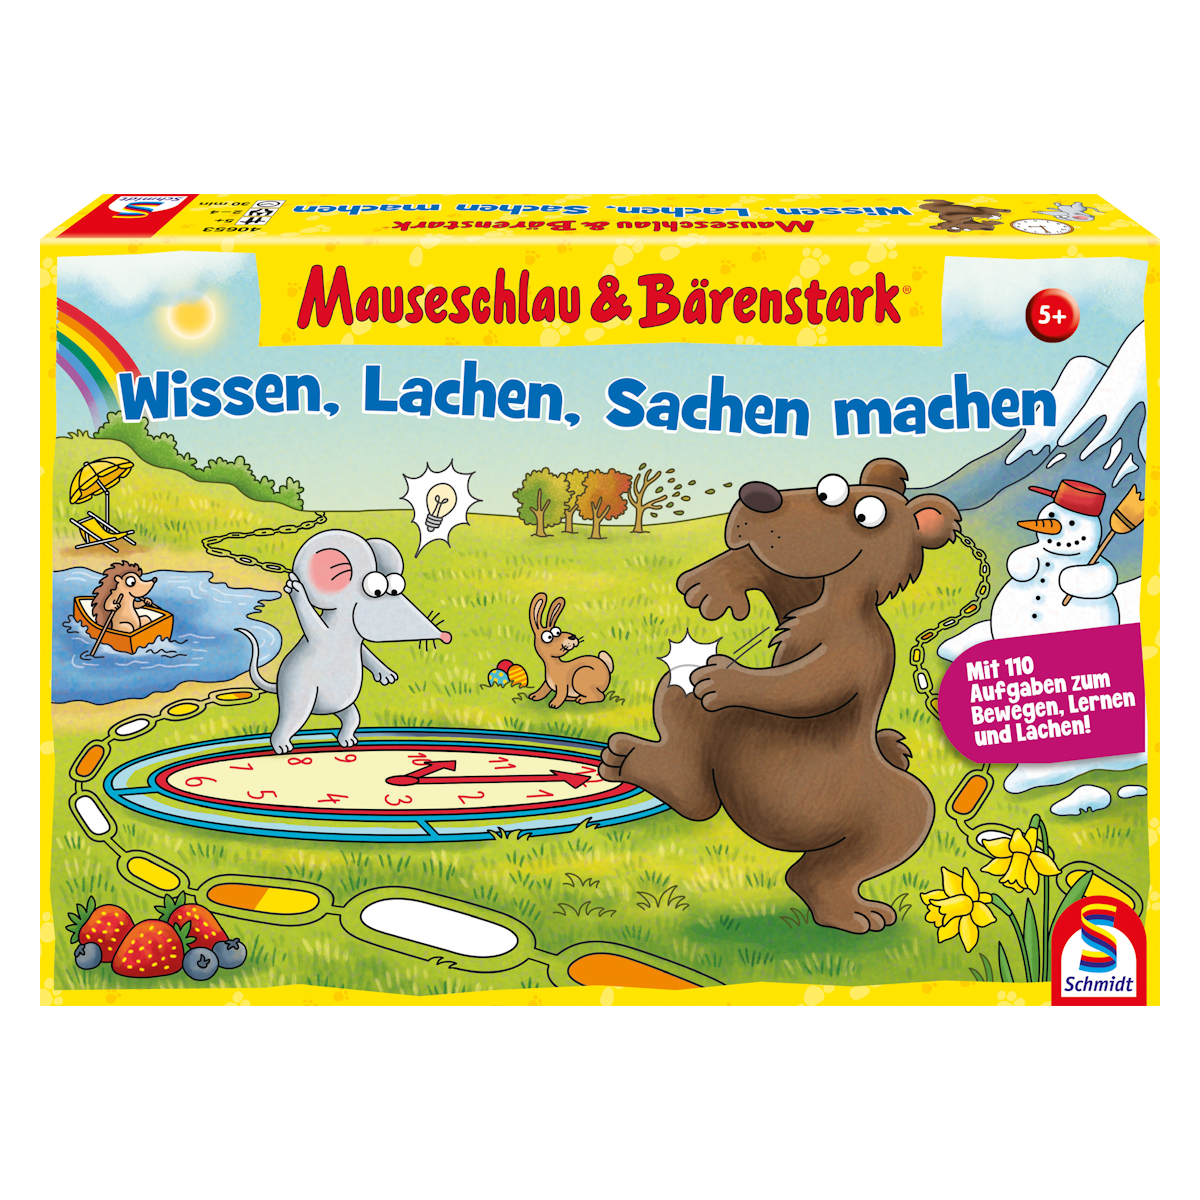 Schmidt Spiele bringt den Klassiker Mauseschlau & Bärenstark zurück